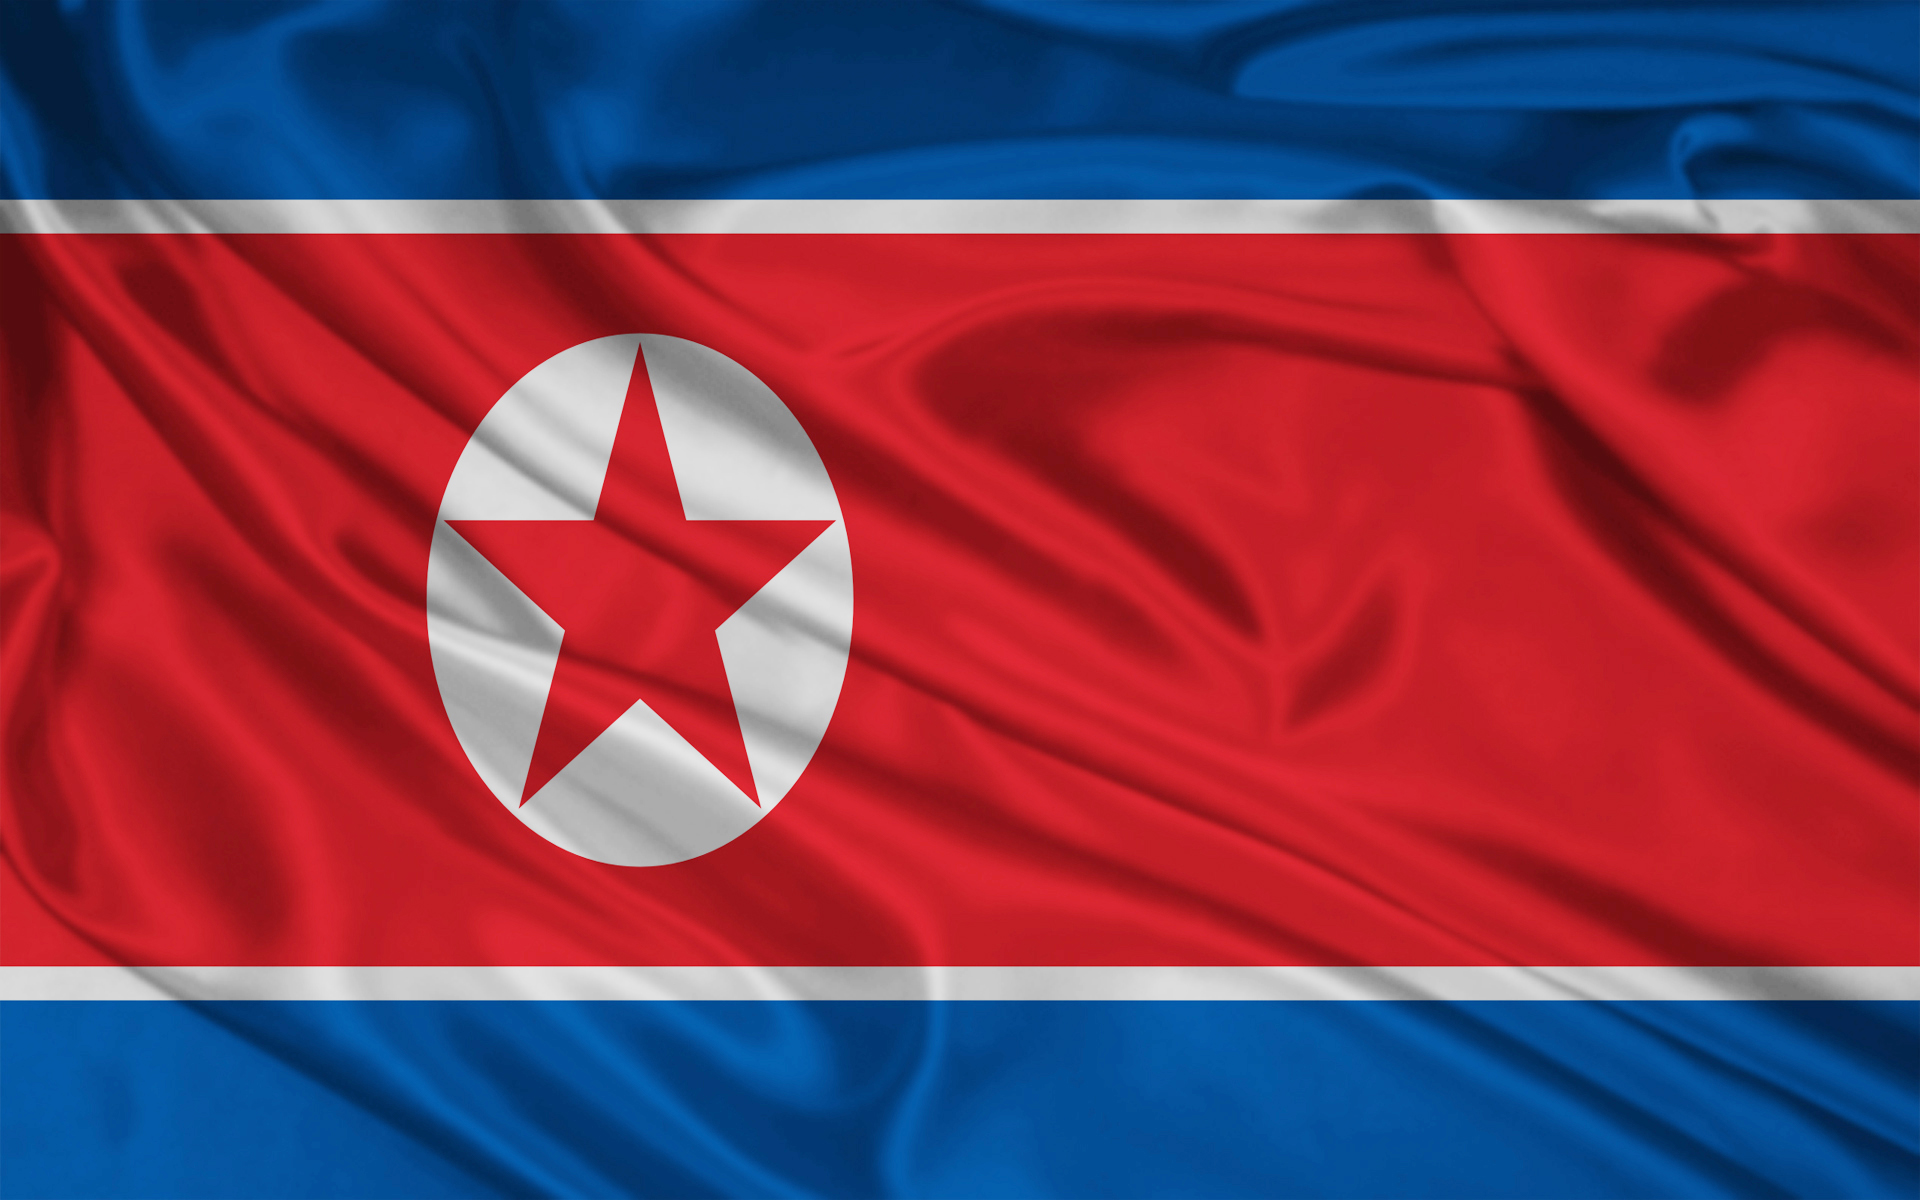 North Korea Flag Wallpaper Stock Photos